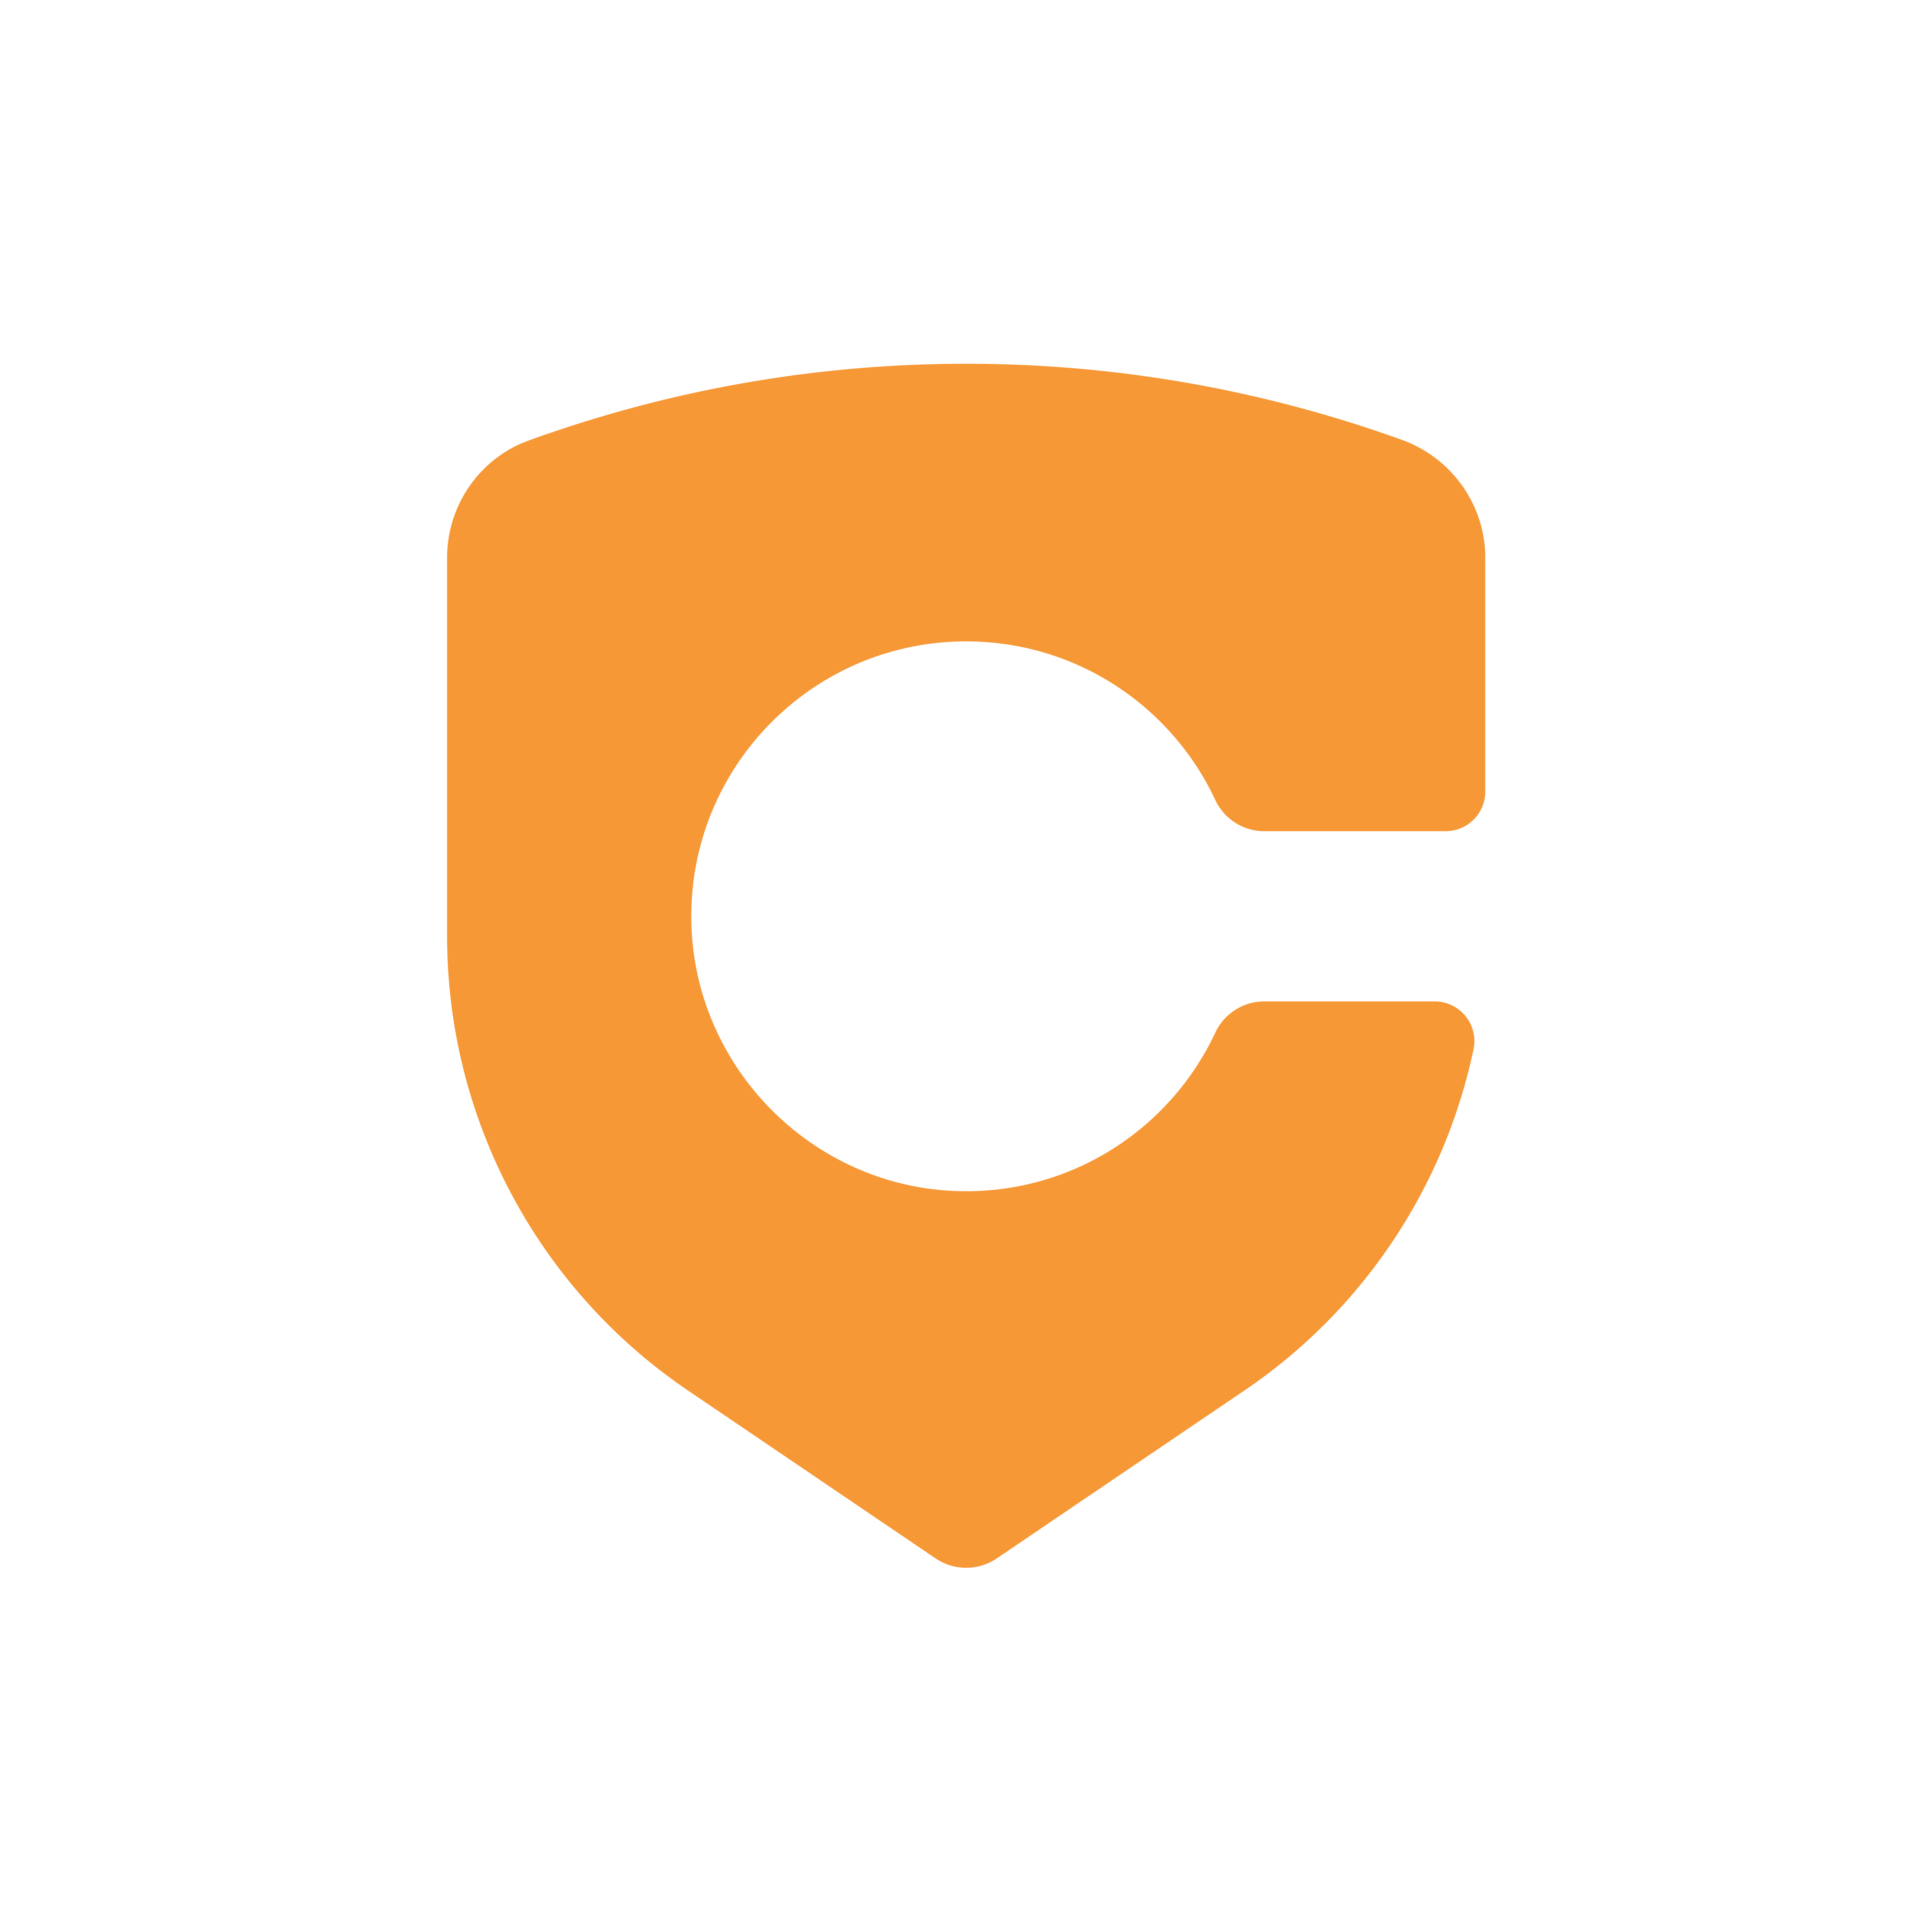 cappex logo